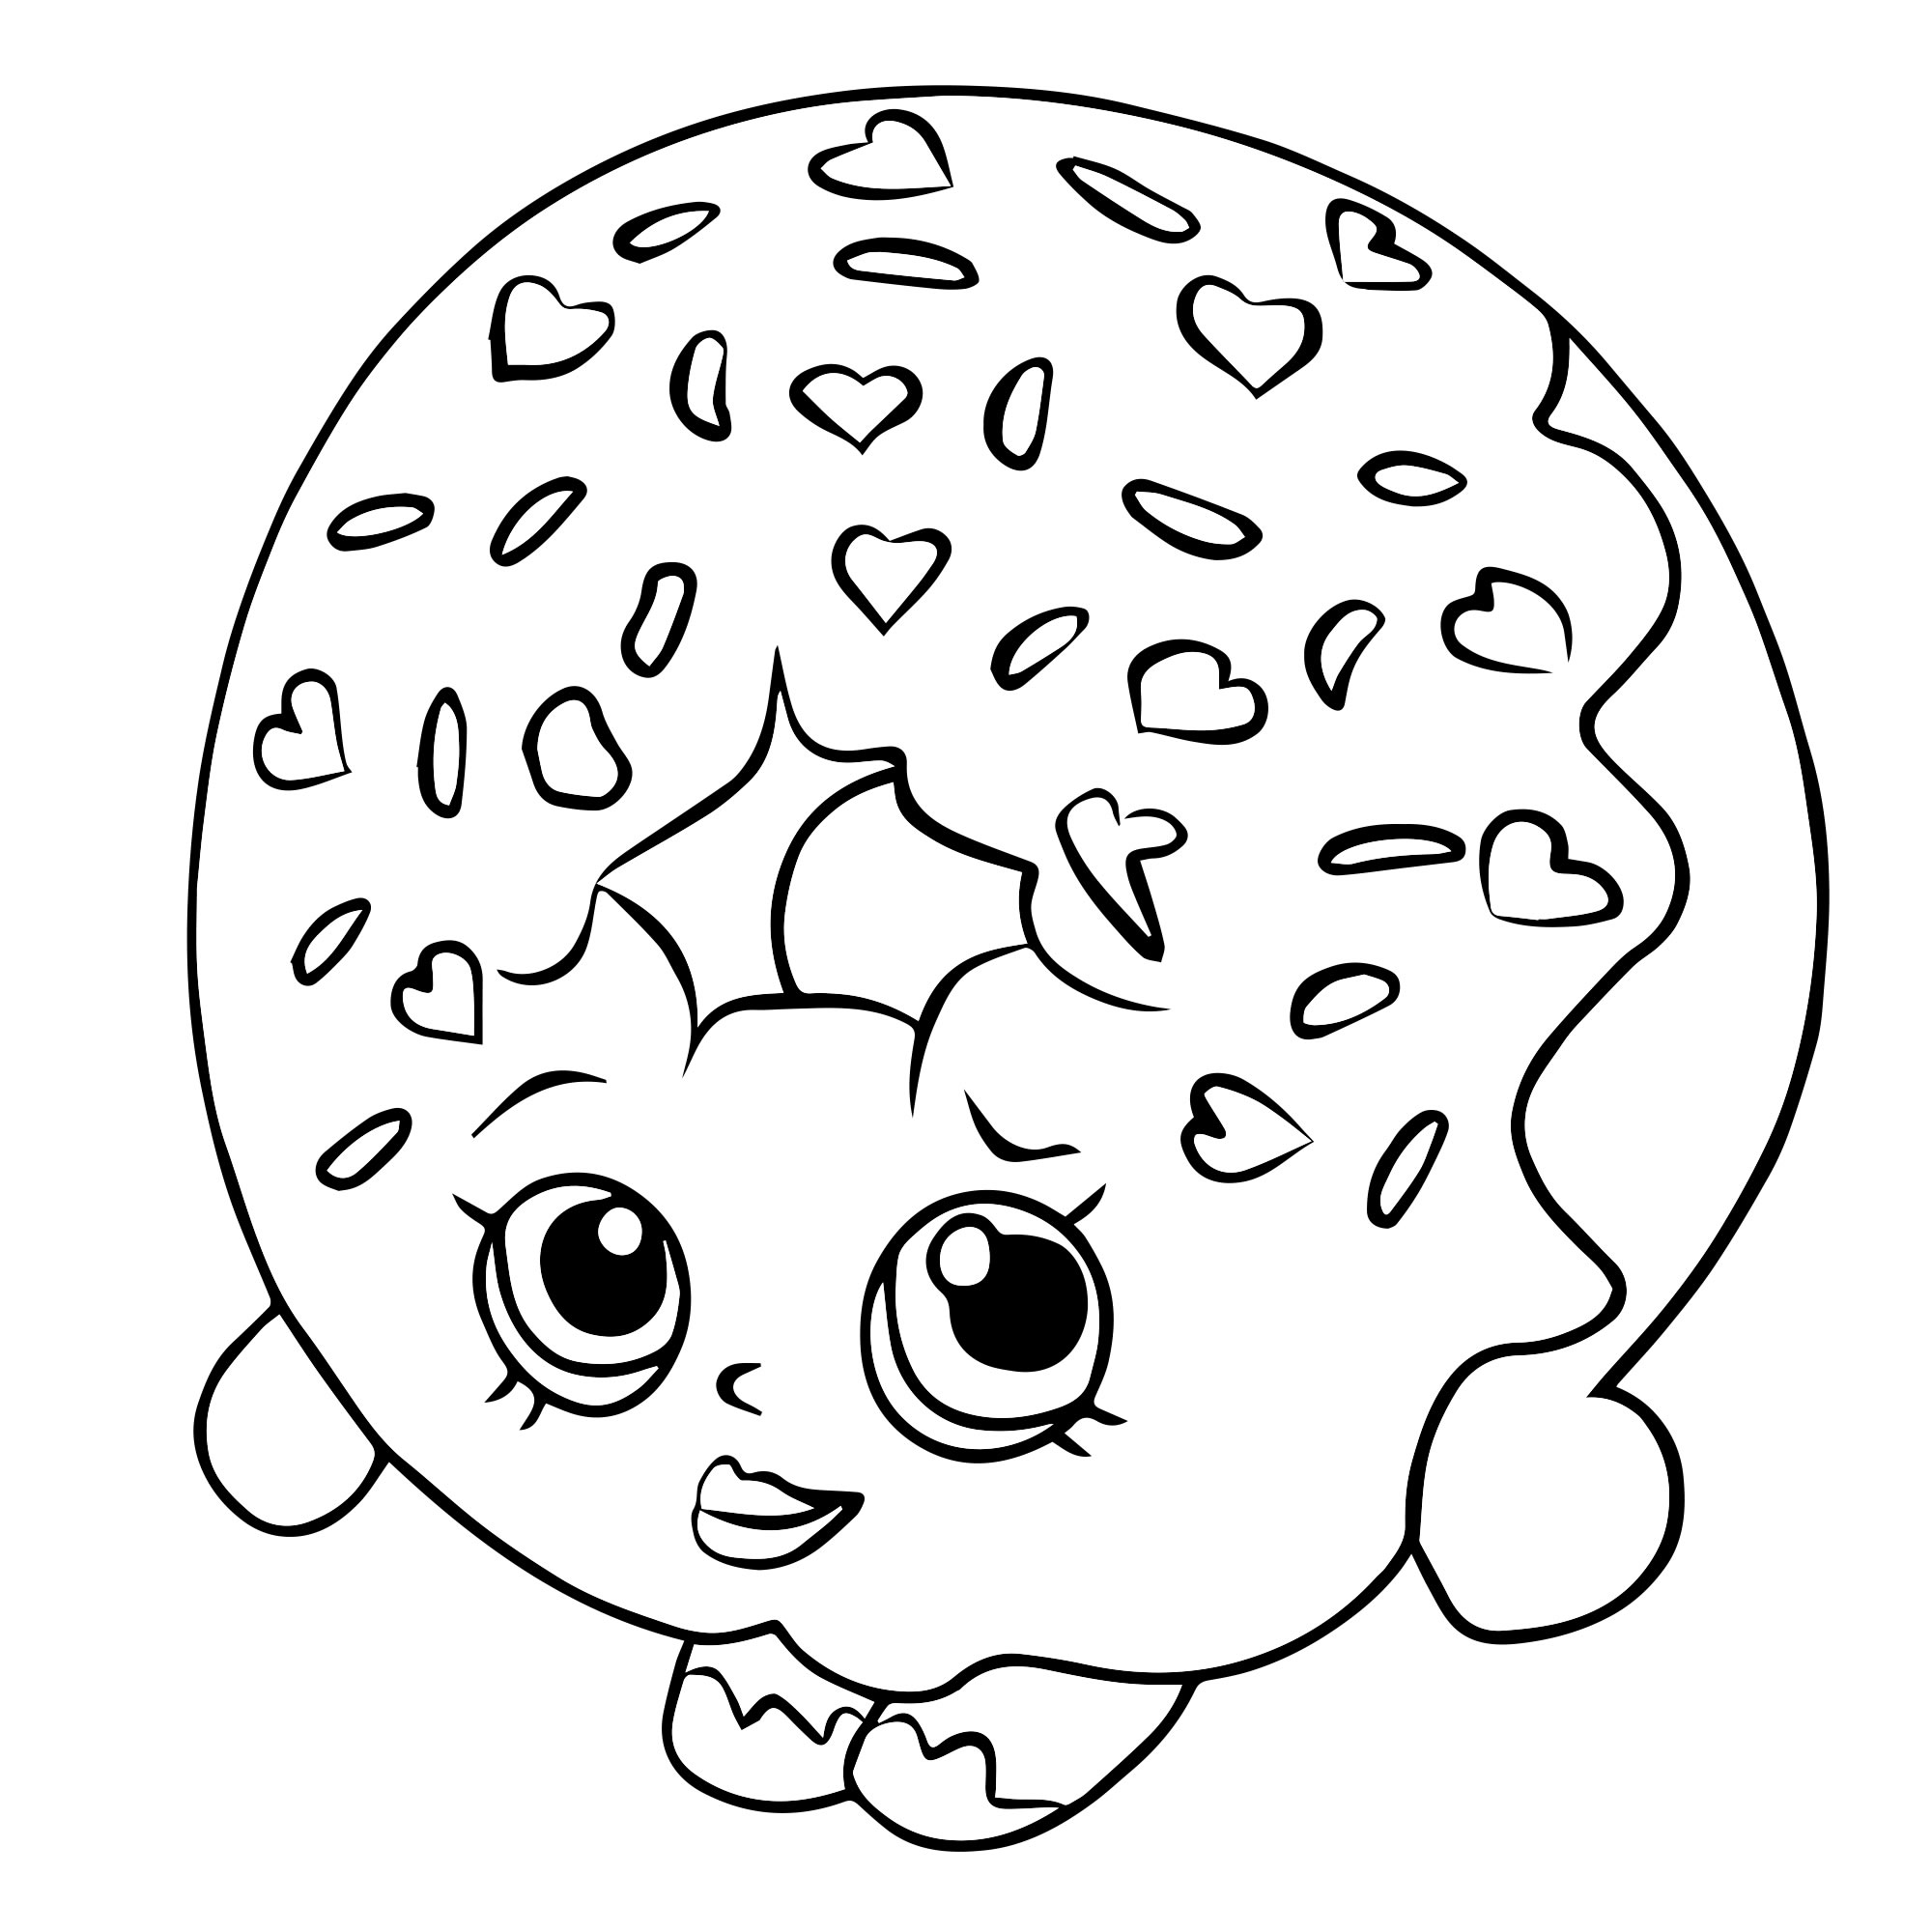 Раскраска пончик: векторные изображения и иллюстрации, которые можно скачать бесплатно | Freepik